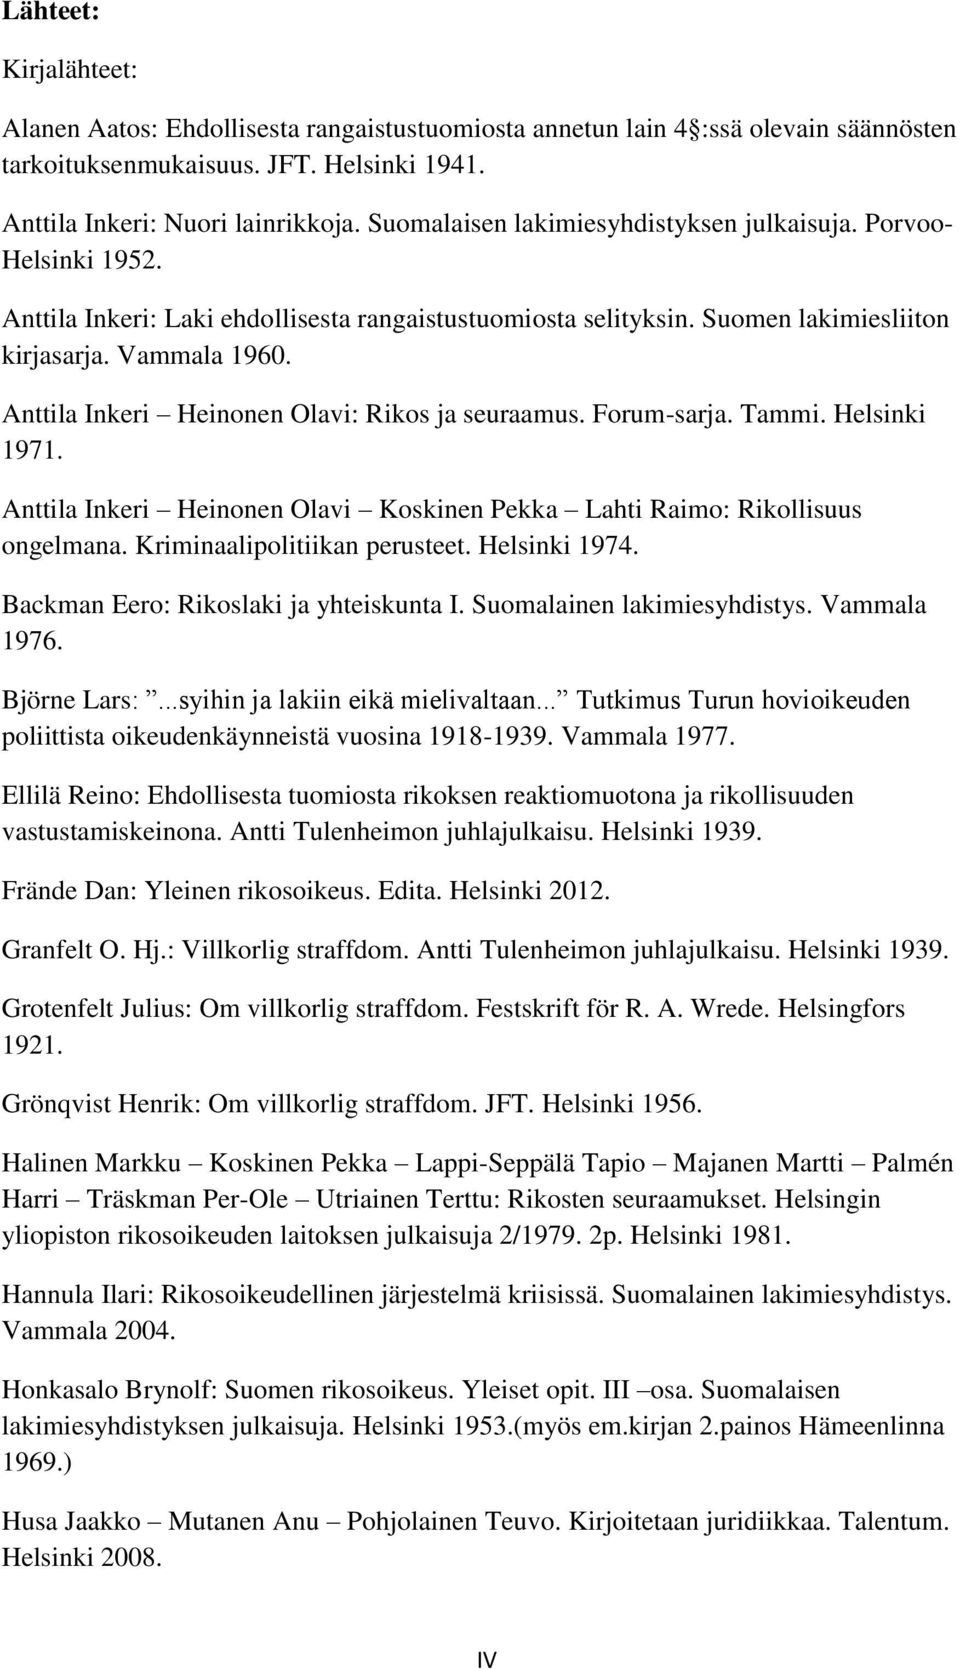 Anttila Inkeri Heinonen Olavi: Rikos ja seuraamus. Forum-sarja. Tammi. Helsinki 1971. Anttila Inkeri Heinonen Olavi Koskinen Pekka Lahti Raimo: Rikollisuus ongelmana. Kriminaalipolitiikan perusteet.